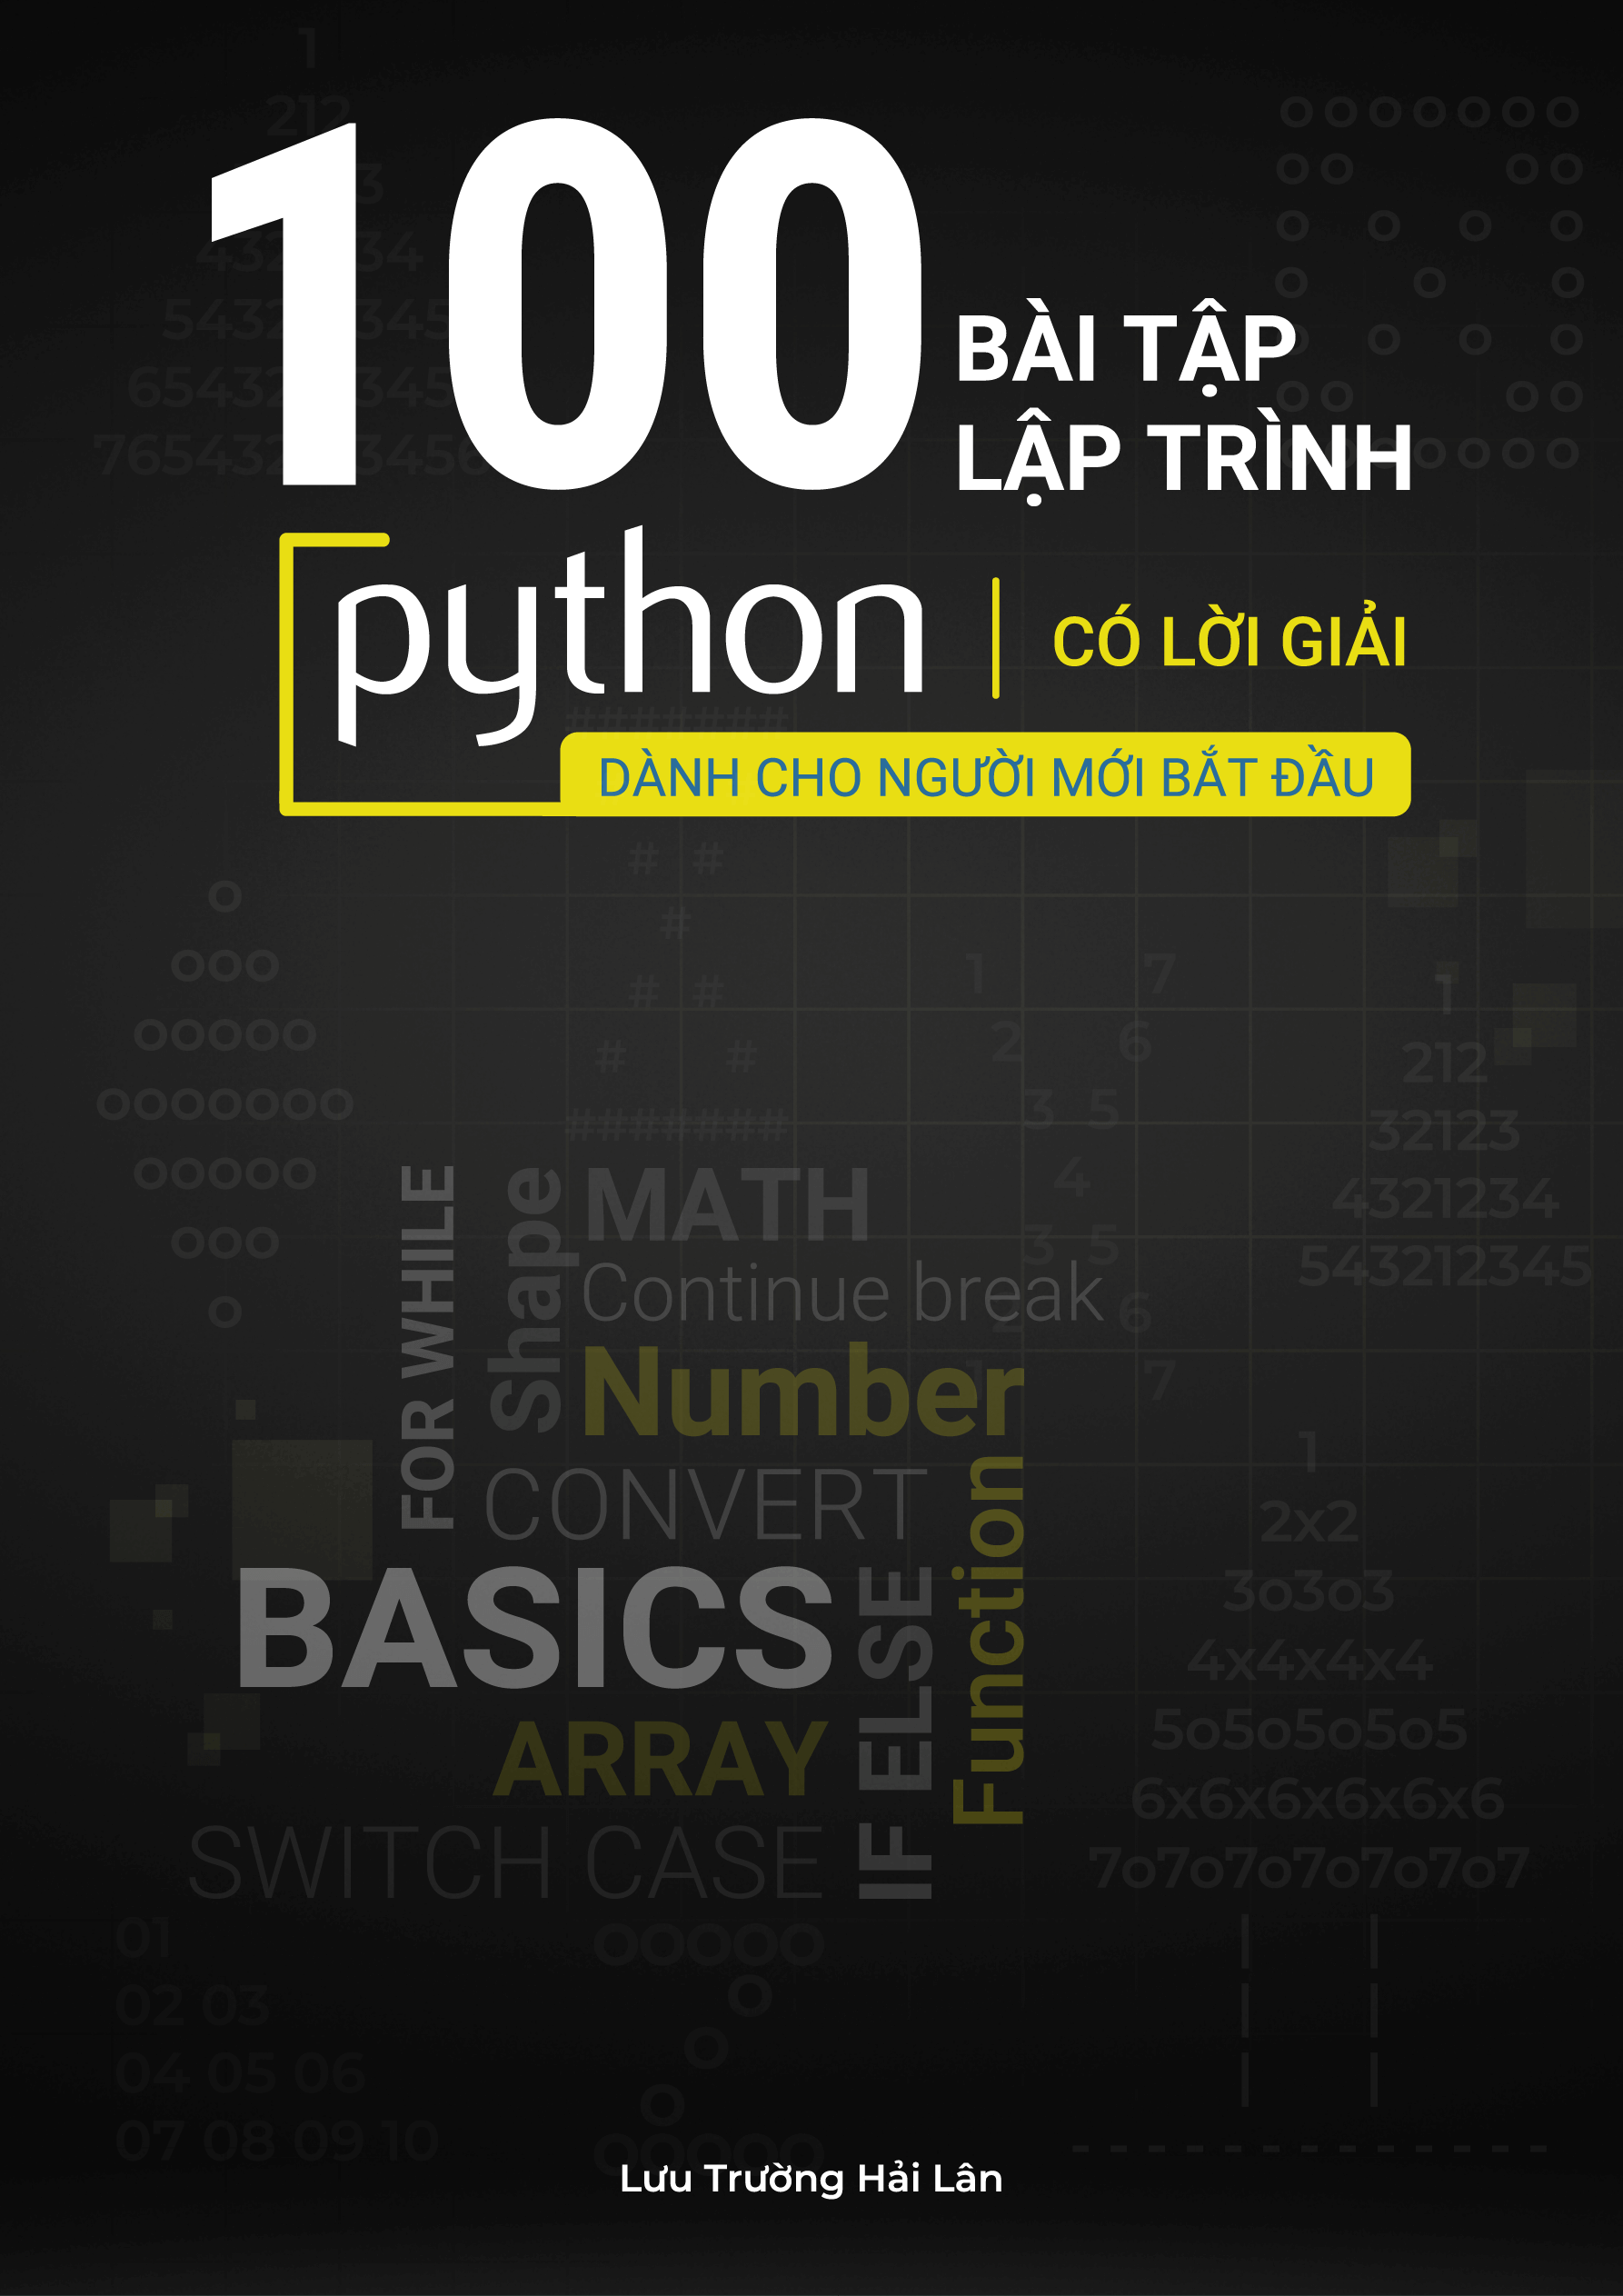 100 bài tập Python có lời giải